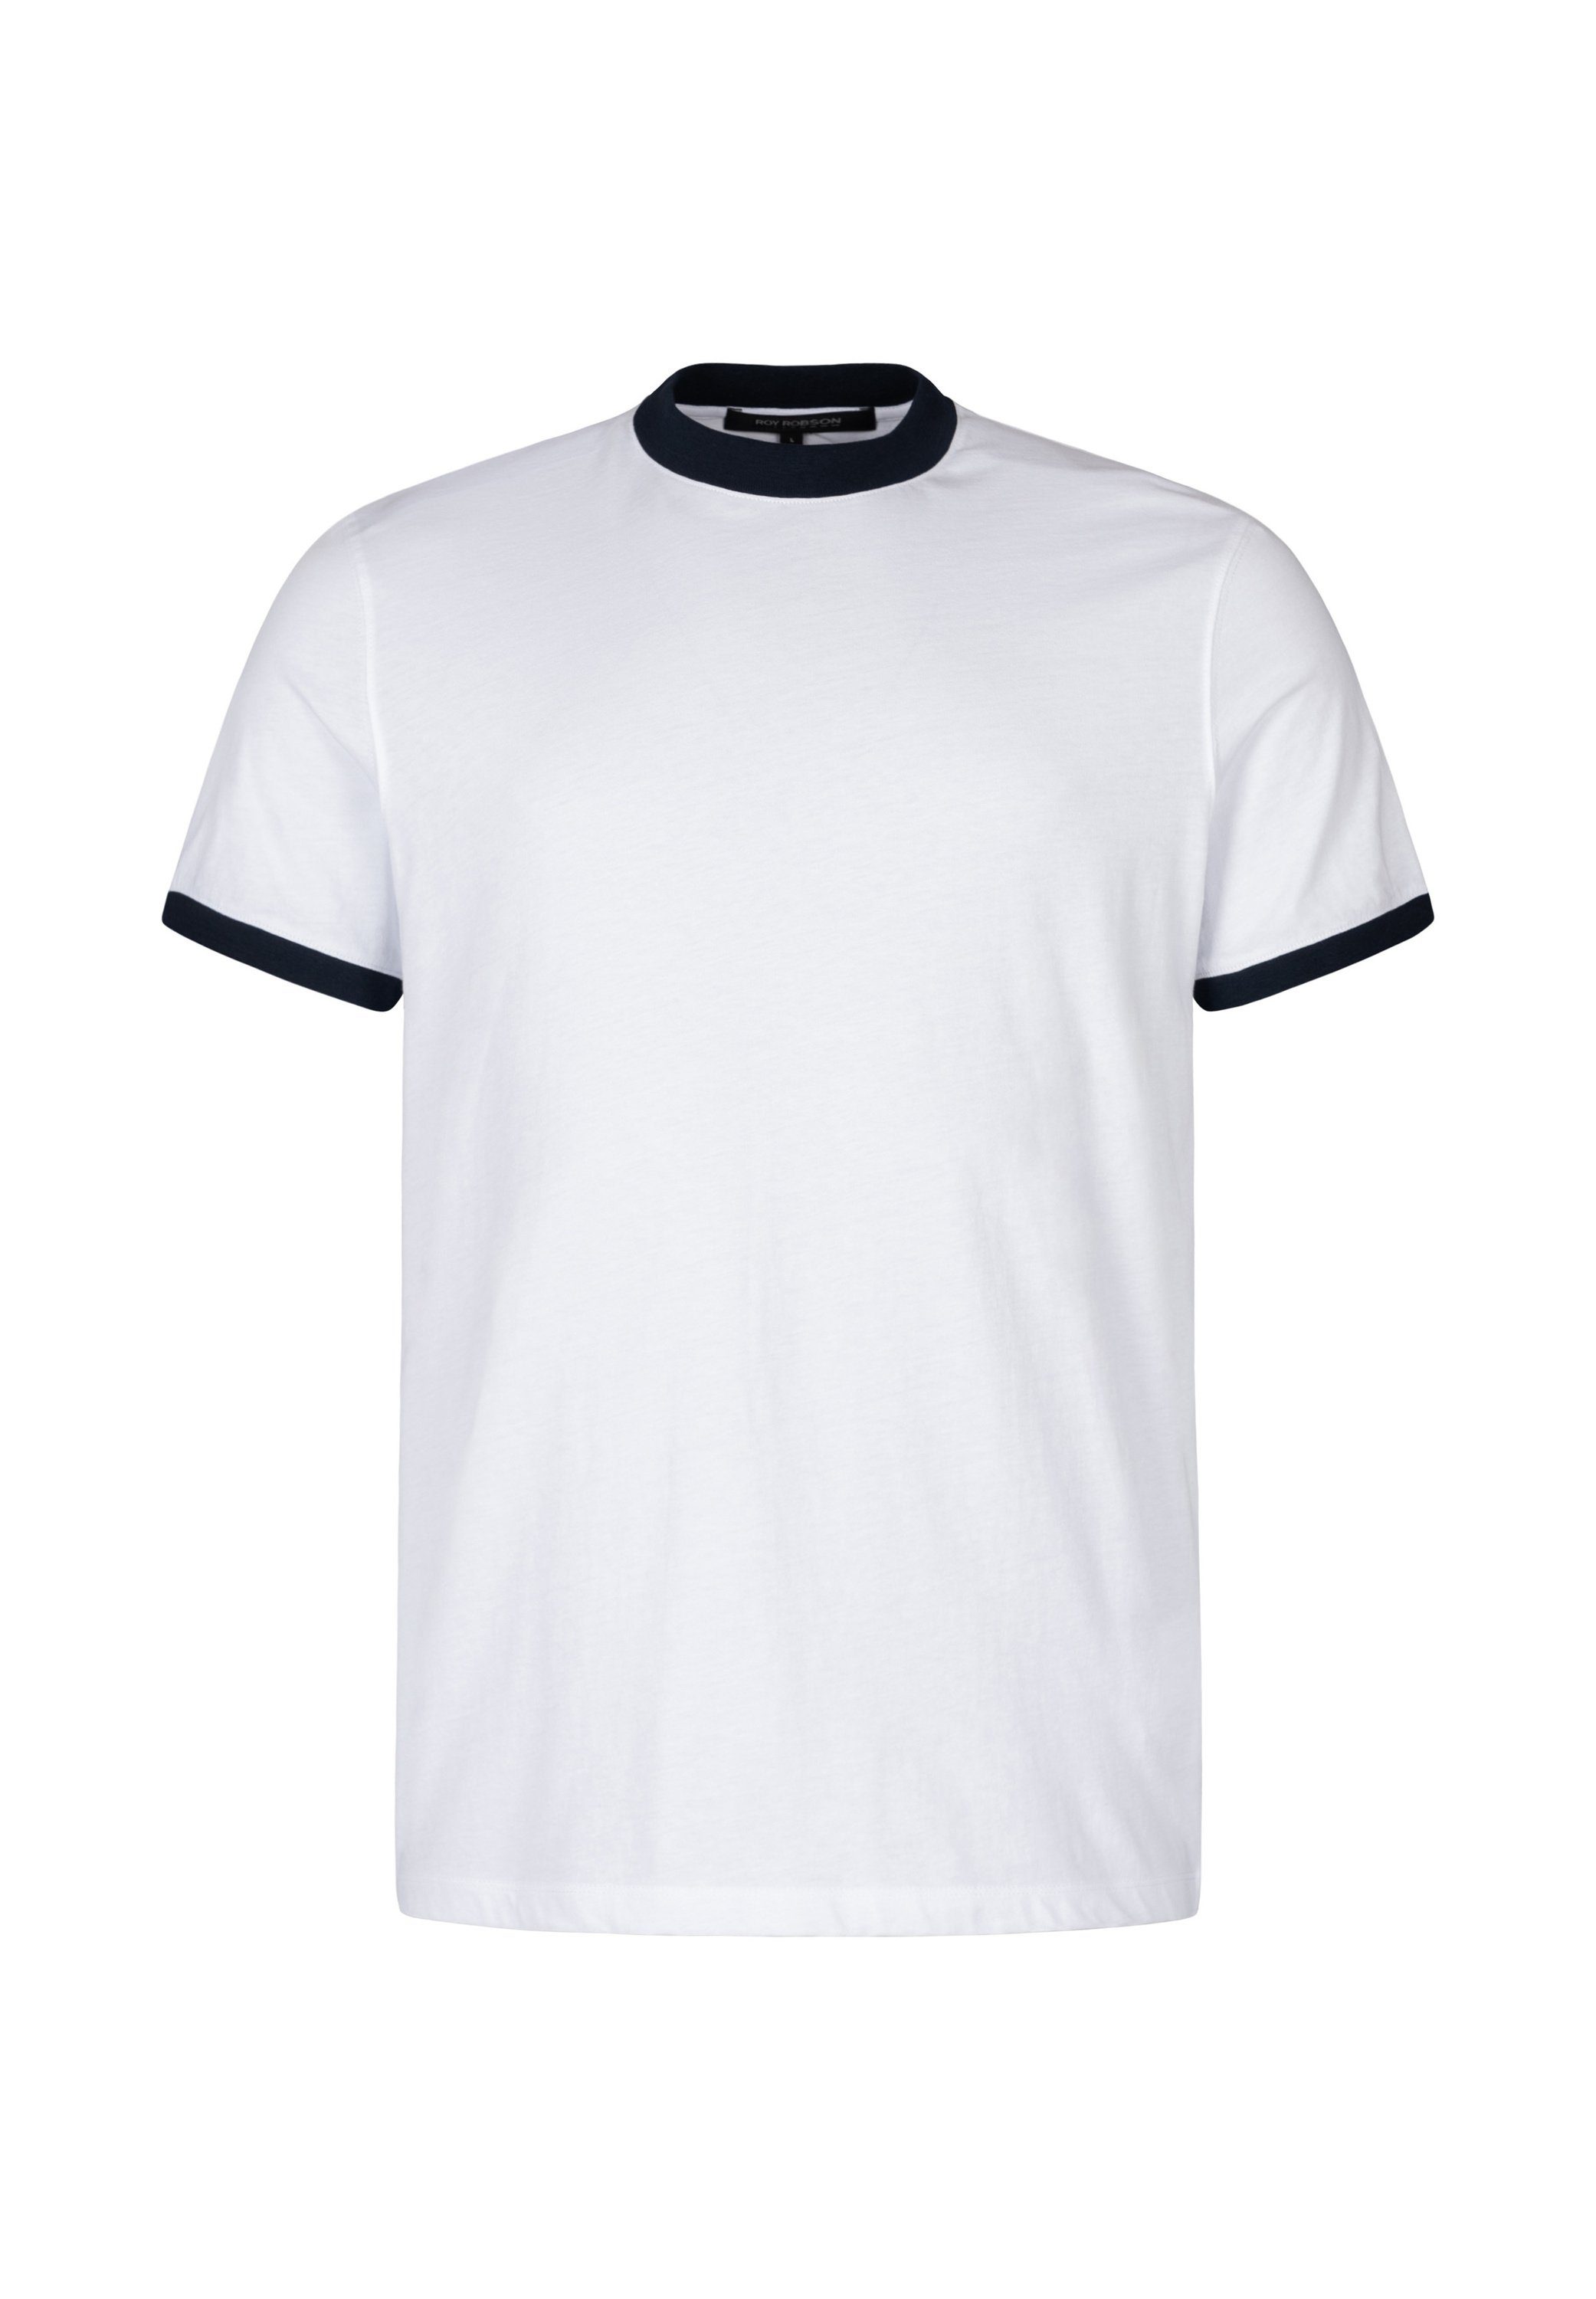 Roy mit Mit weiss Robson Kontrastbündchen T-Shirt Design sportivem